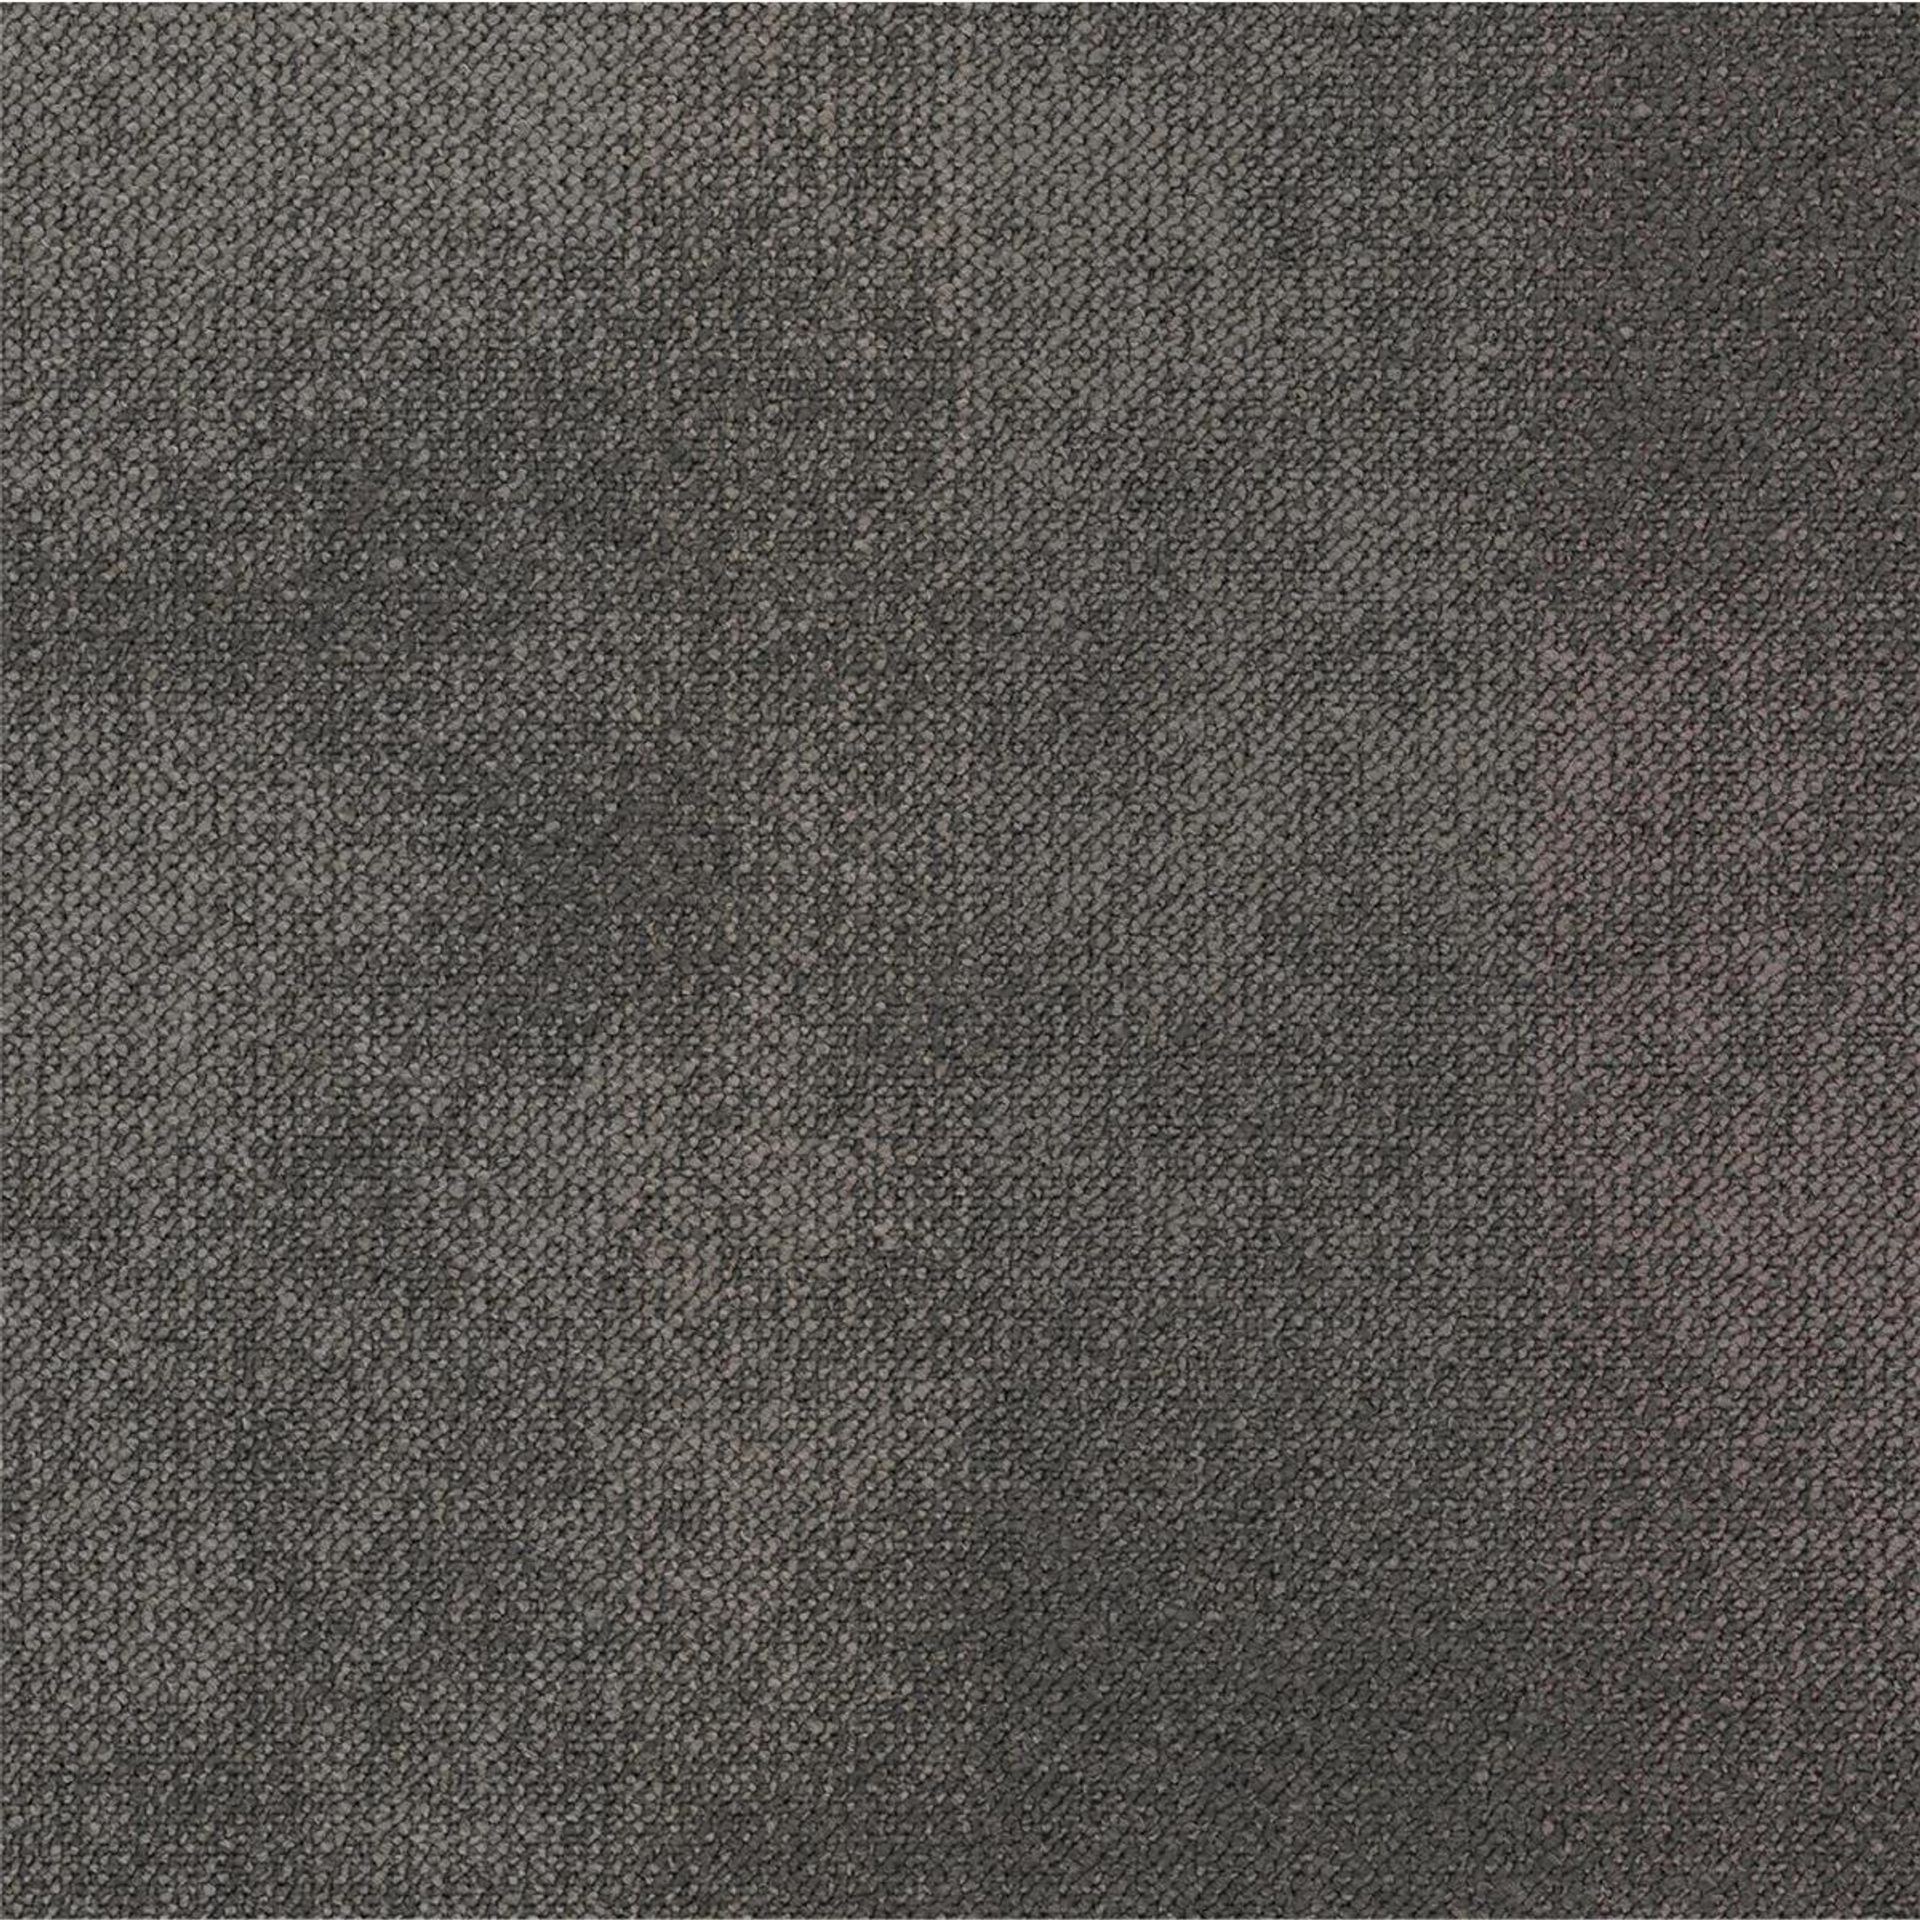 Teppichfliese 50 x 50 cm Schlinge strukturiert Desso Serene AB93 9975 B8 Braun Organisch